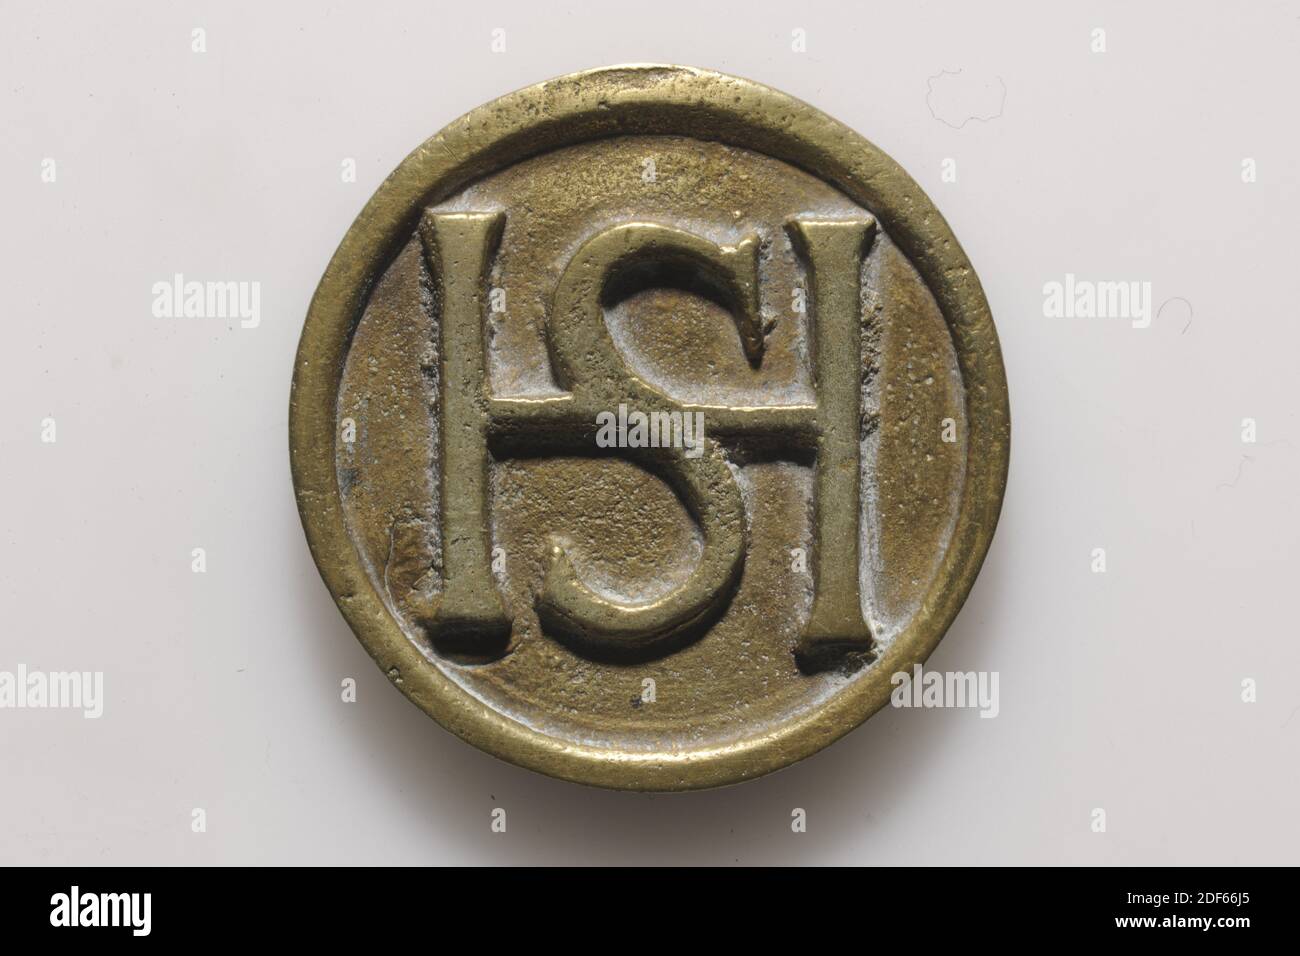 Médaille, Anonyme, première moitié du XVIIIe siècle, fonte, général: 4 x  0.4cm 40 x 4mm, poids: 30,6g, blason de ville, lion, jeton en cuivre de  laiton, moulé pour la maison assise. Sur